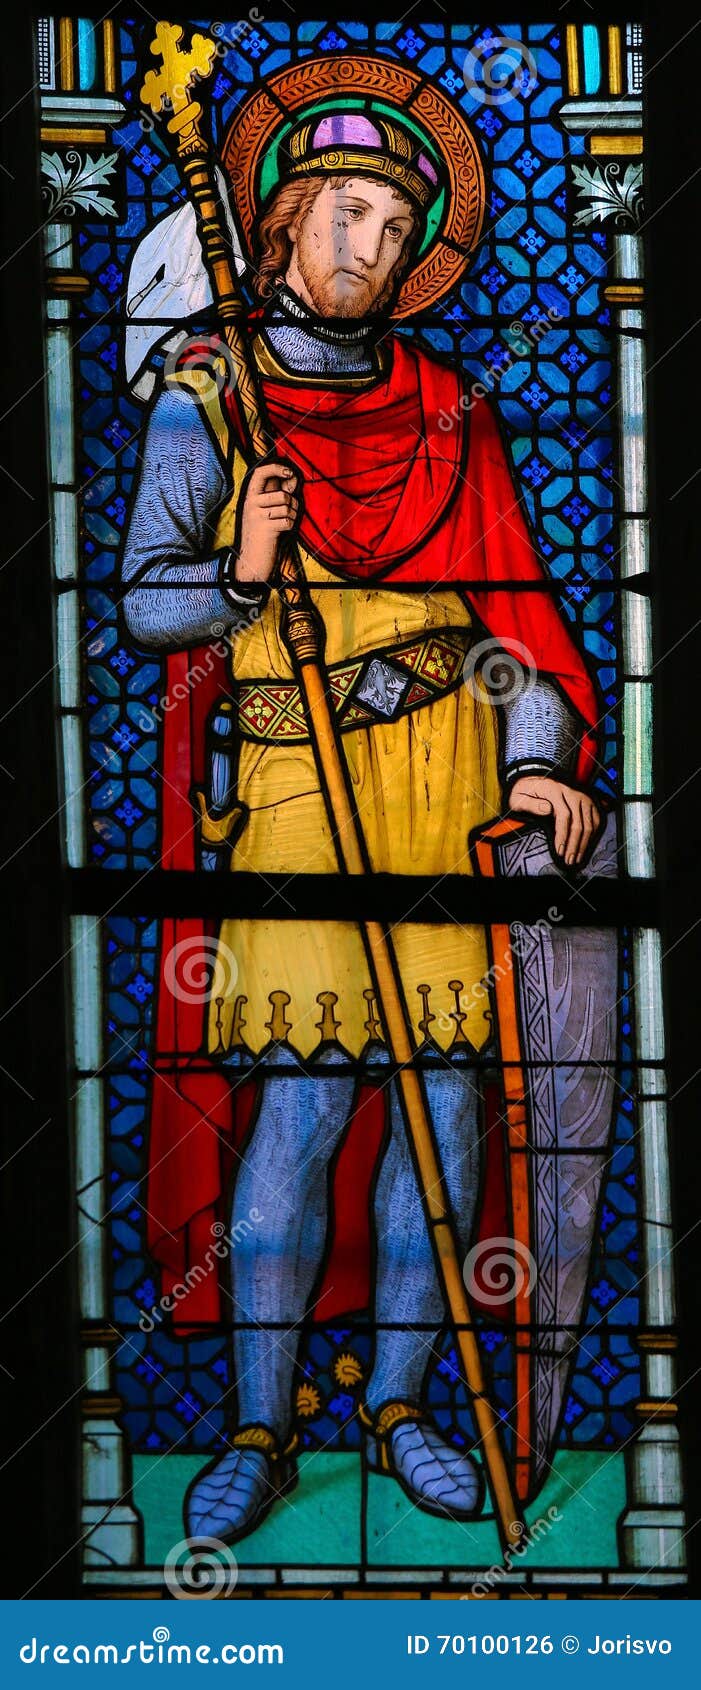 stained glass - wenceslaus i, duke of bohemia